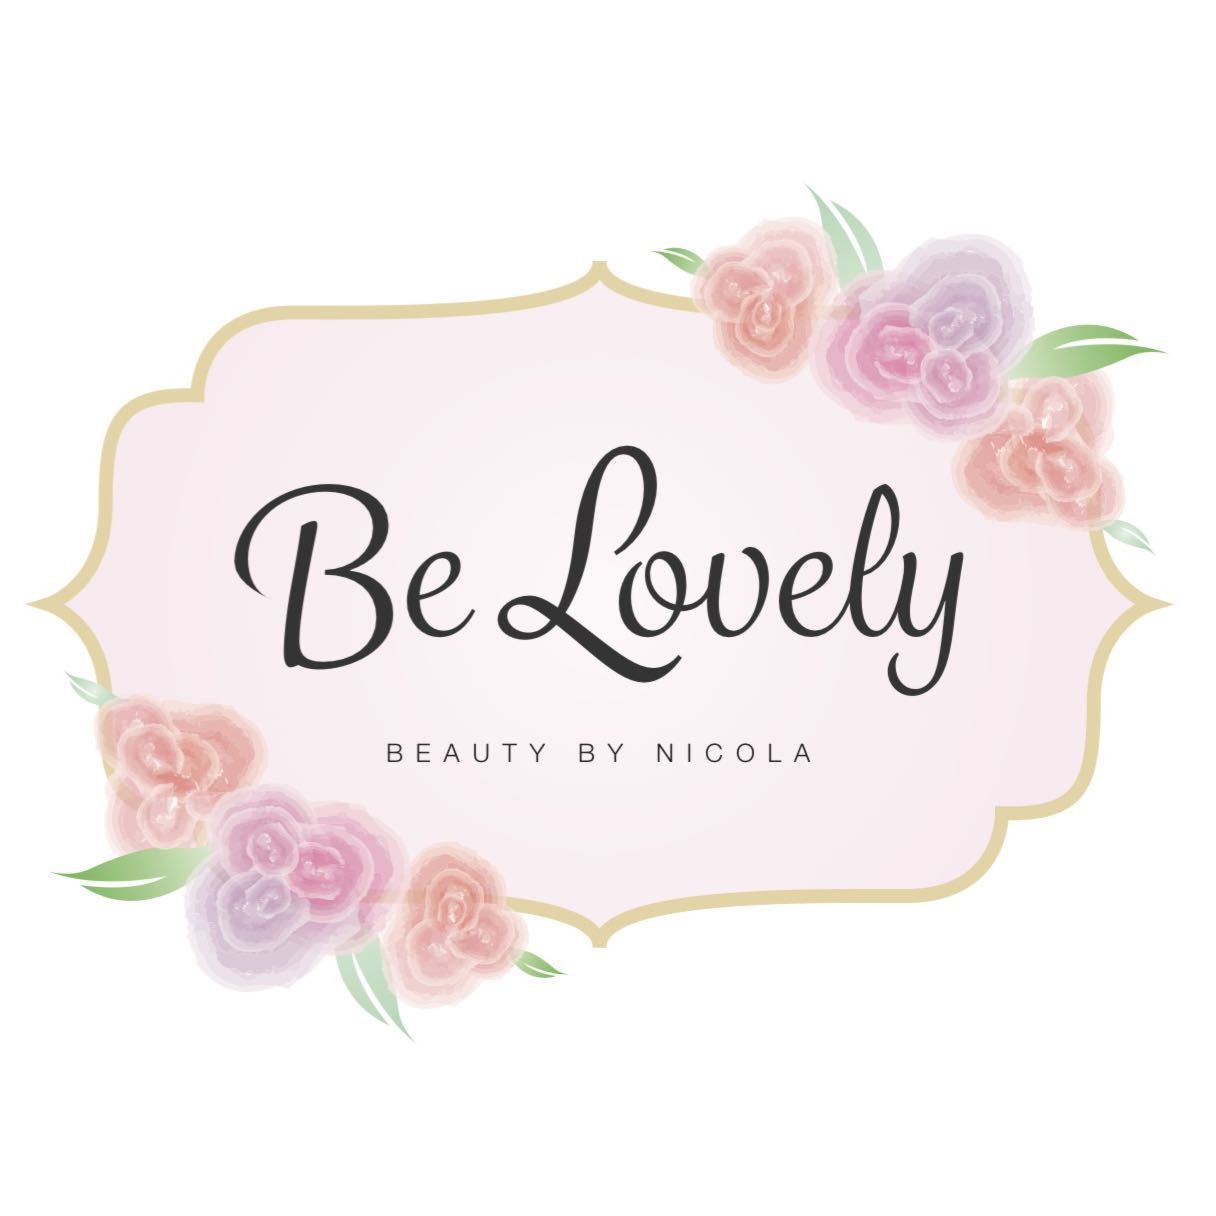 BeLovely Beauty and Makeup Artist, 3 Beech Hill, Larne